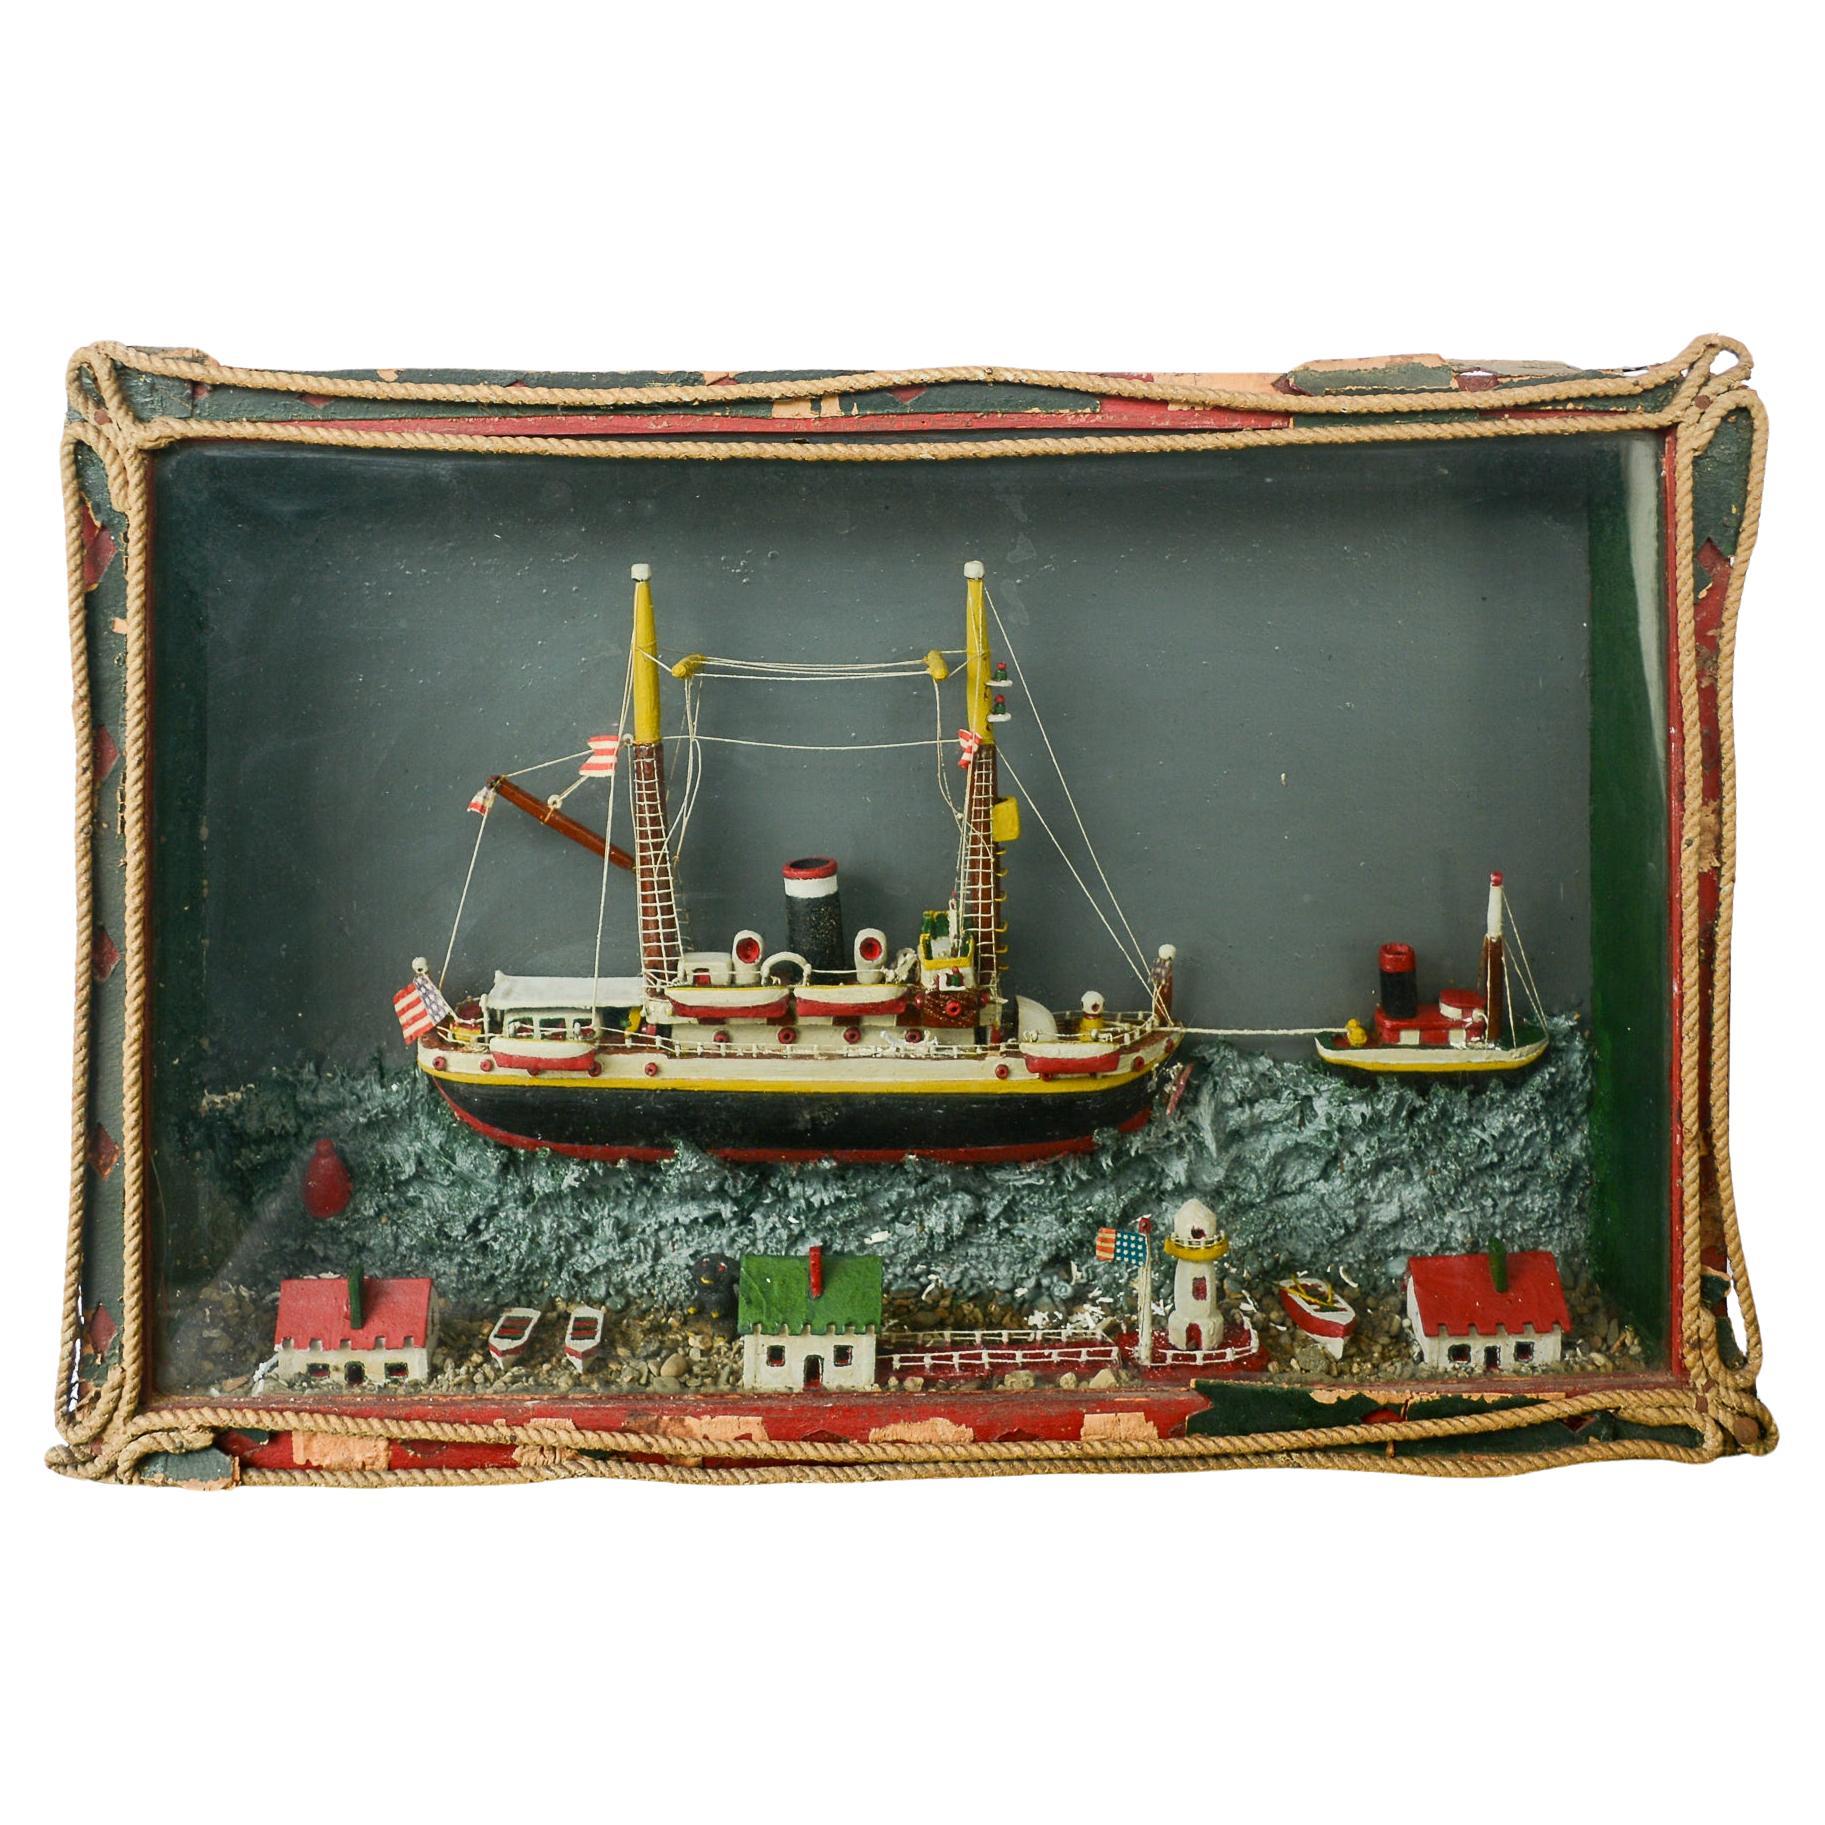 Volkskunstschiff Diorama aus dem frühen 20. Jahrhundert